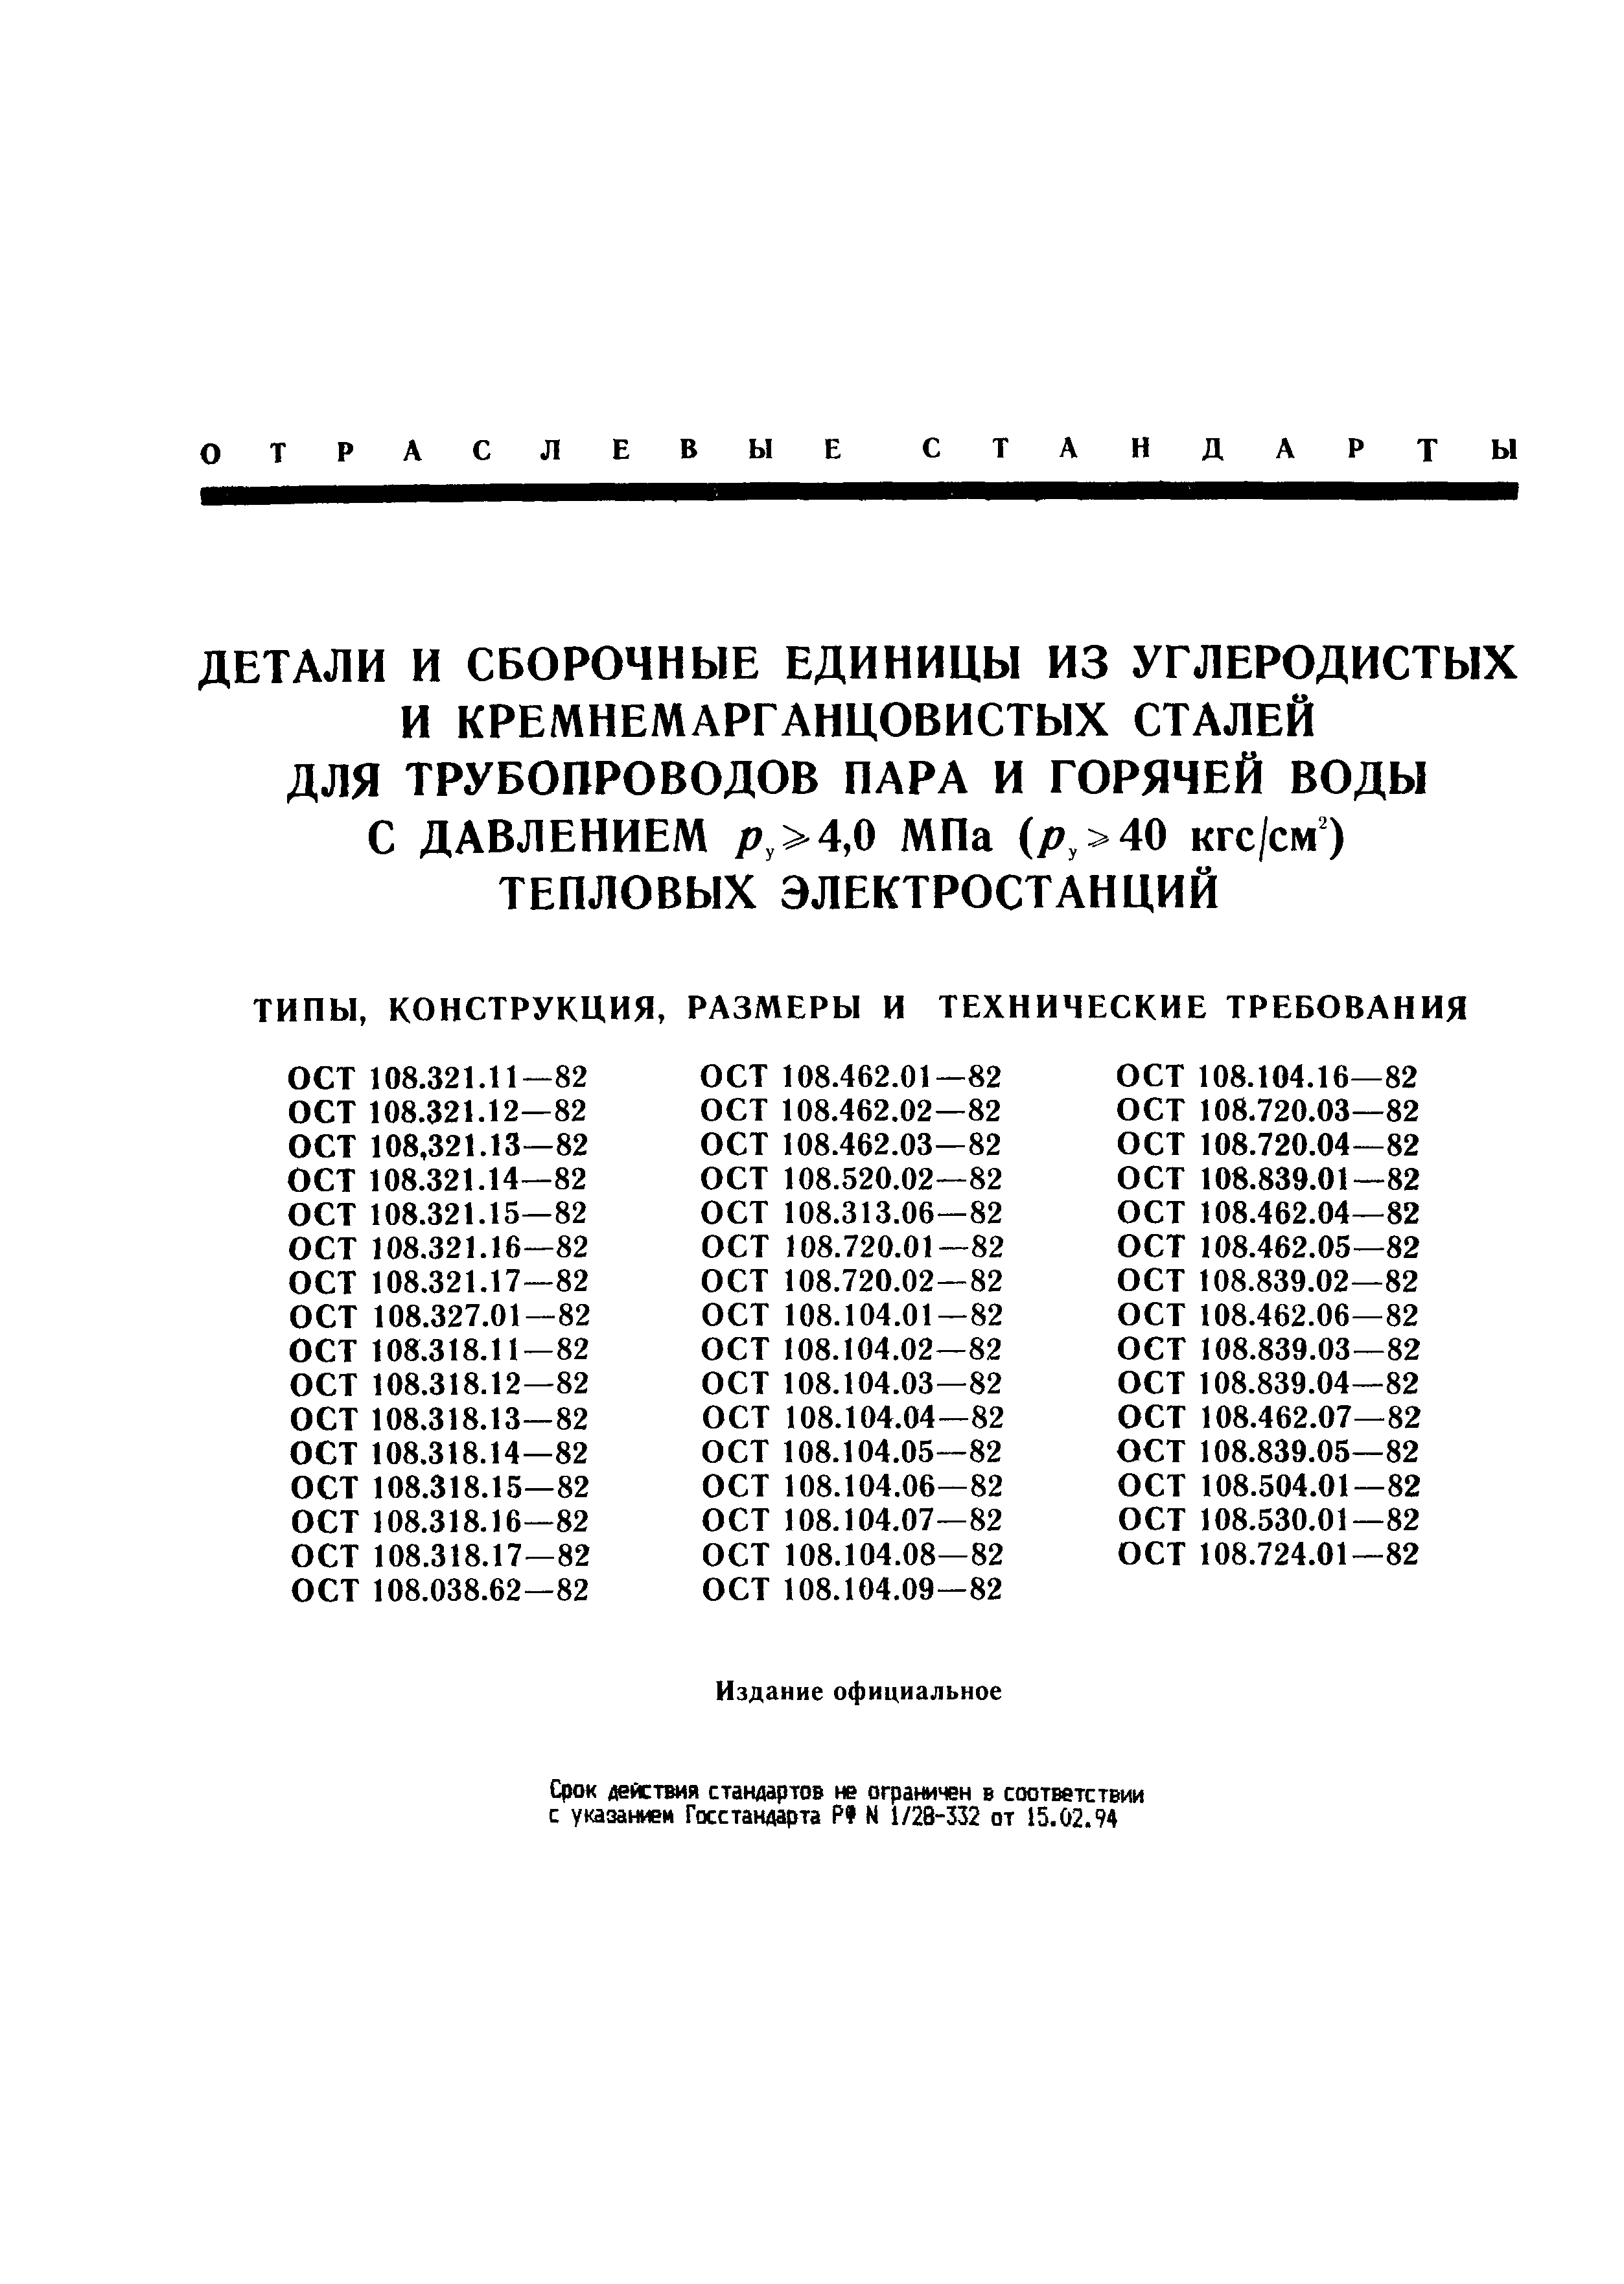 ОСТ 108.321.12-82